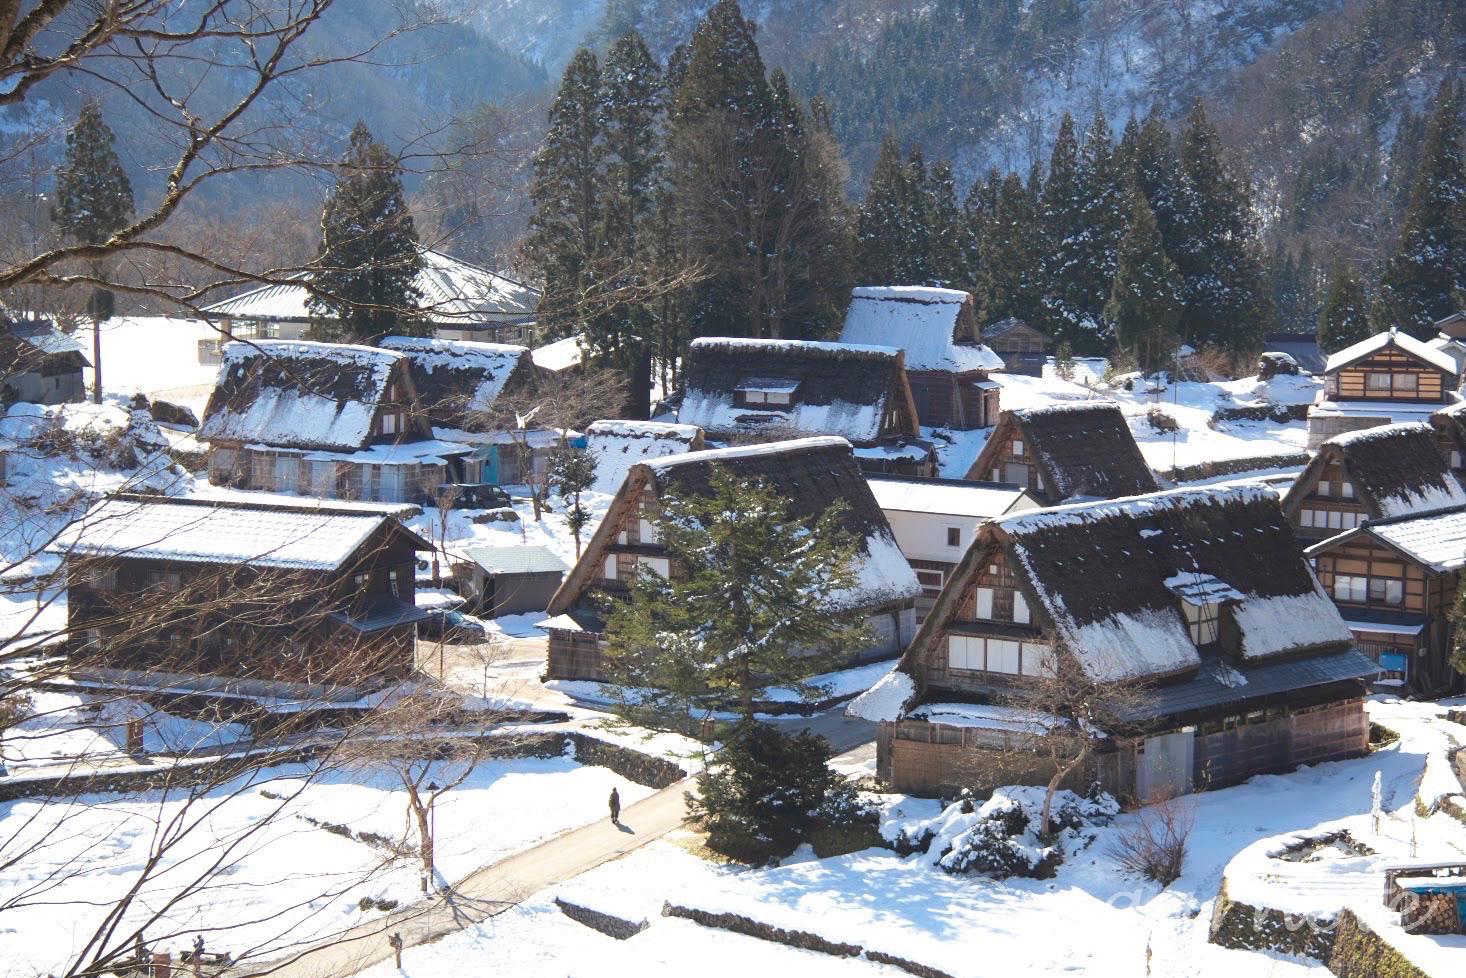 五箇山, 相倉合掌造り集落, Gokayama Ainokura Gassho-style Village